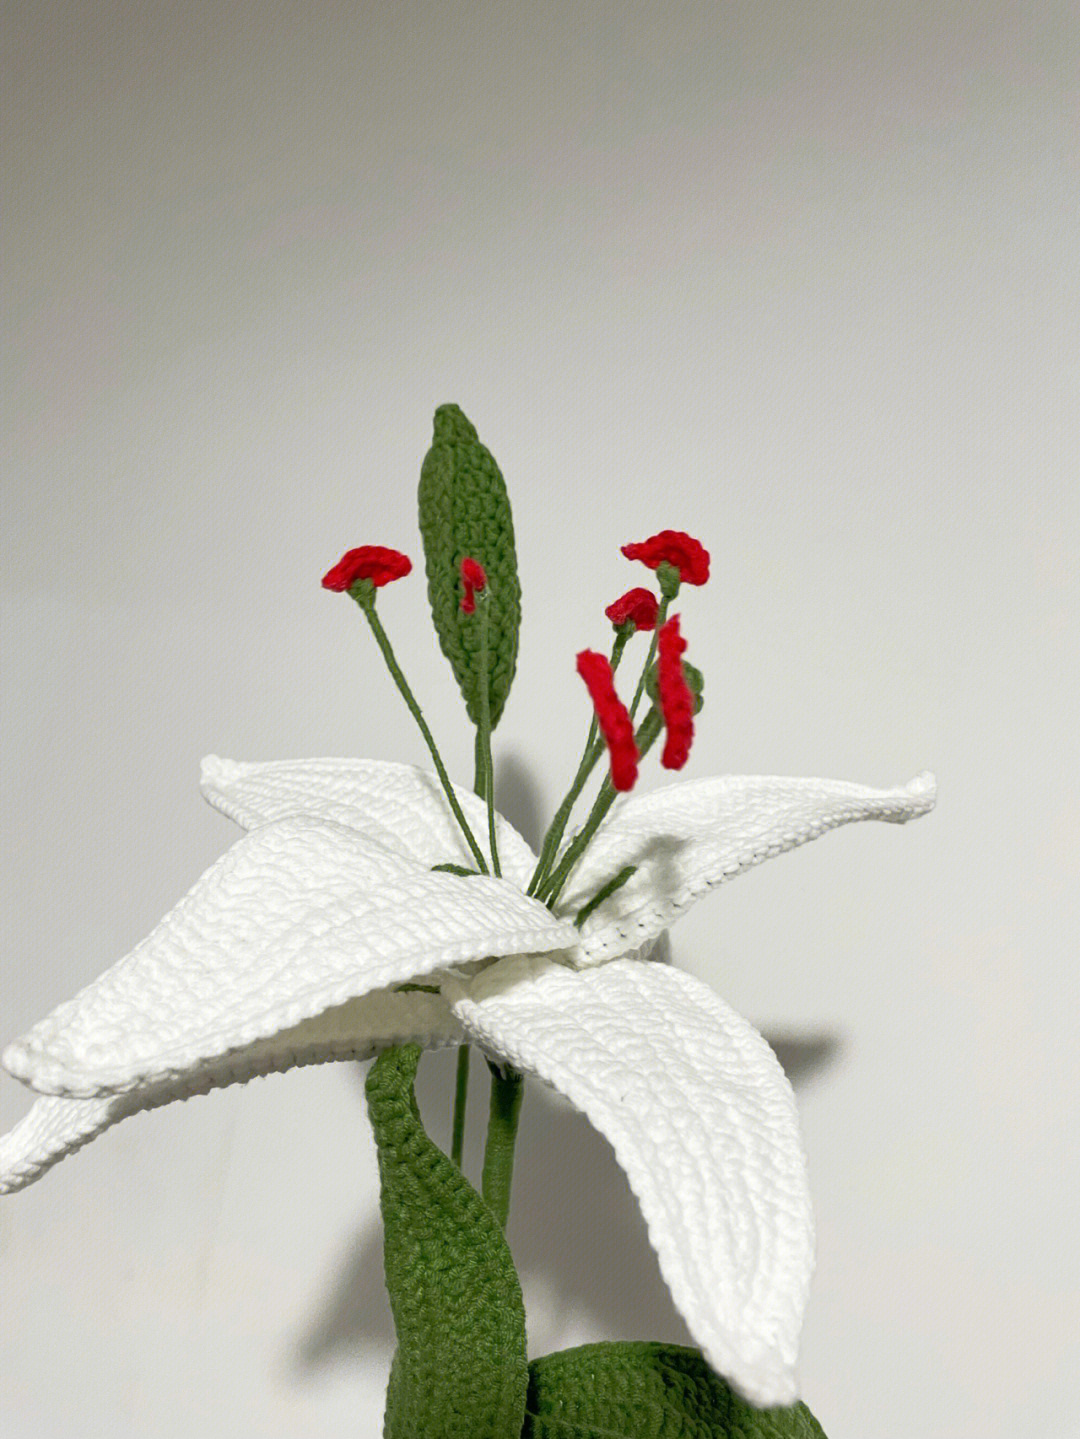 百合花花蕊的钩织方法图片